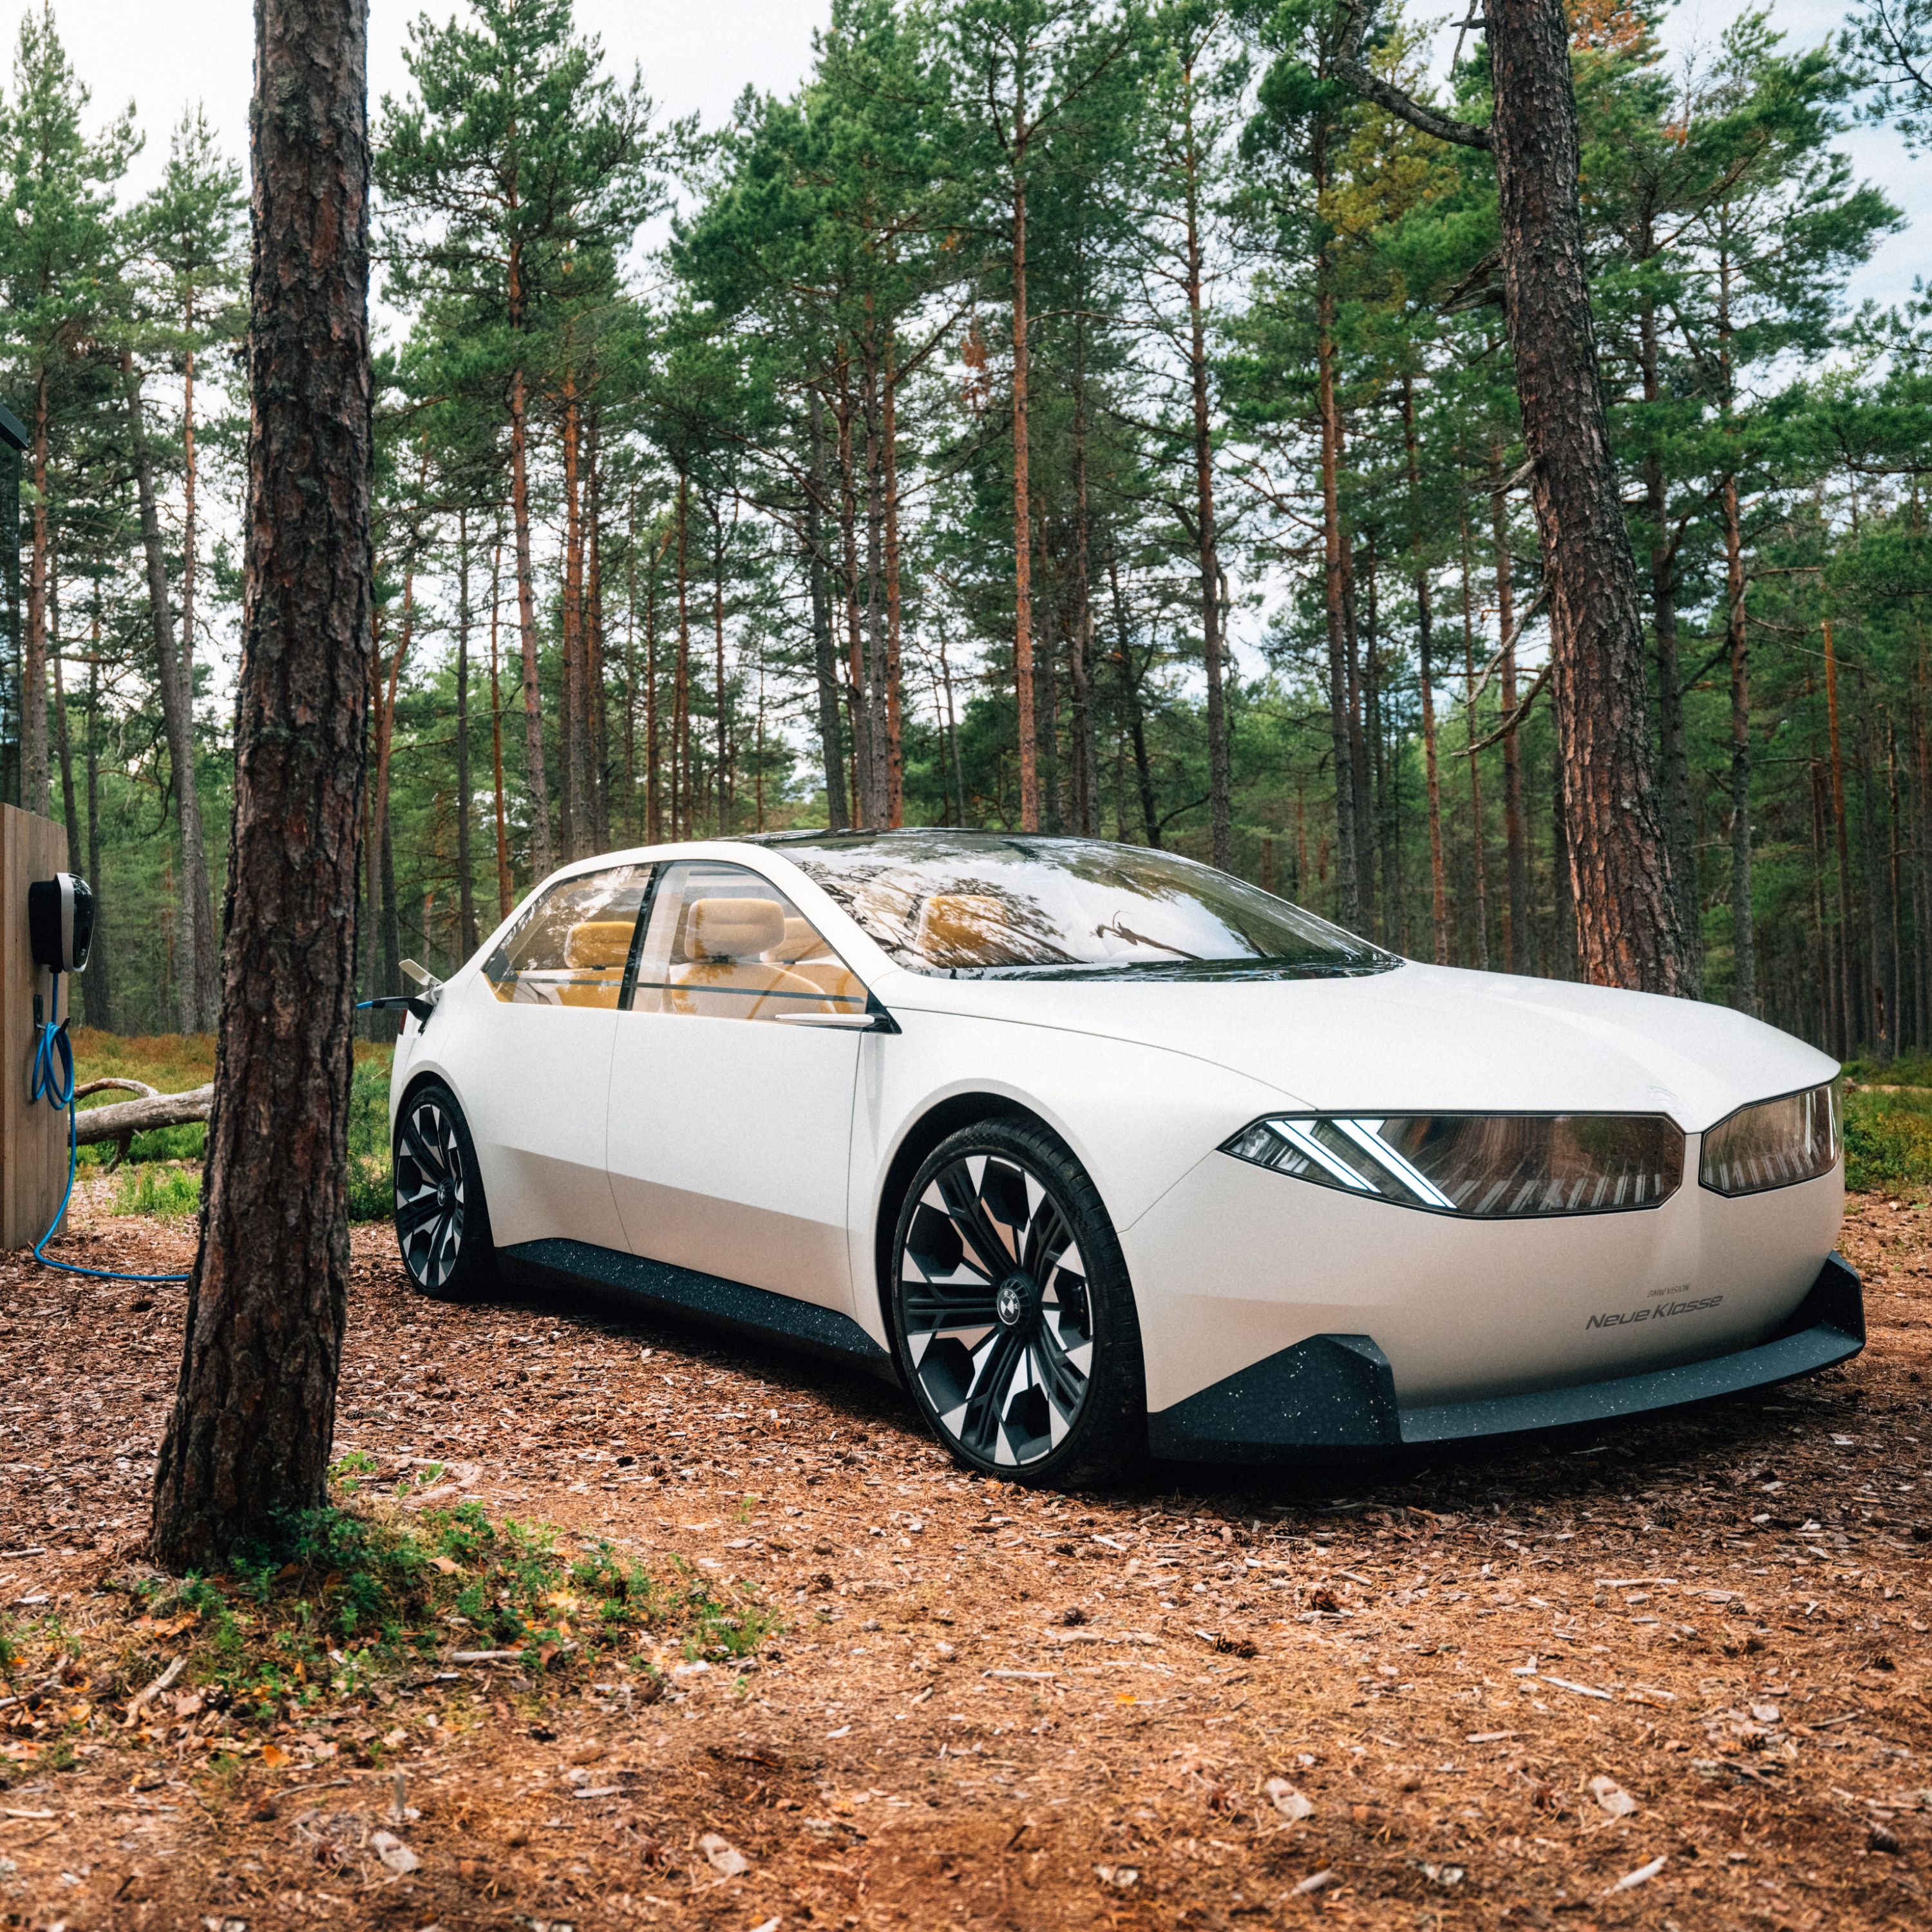 BMW Vision Neue Klasse 2/3 концепт-кар 2023, экстерьер, вид сбоку в 2/3, поездка в лесу